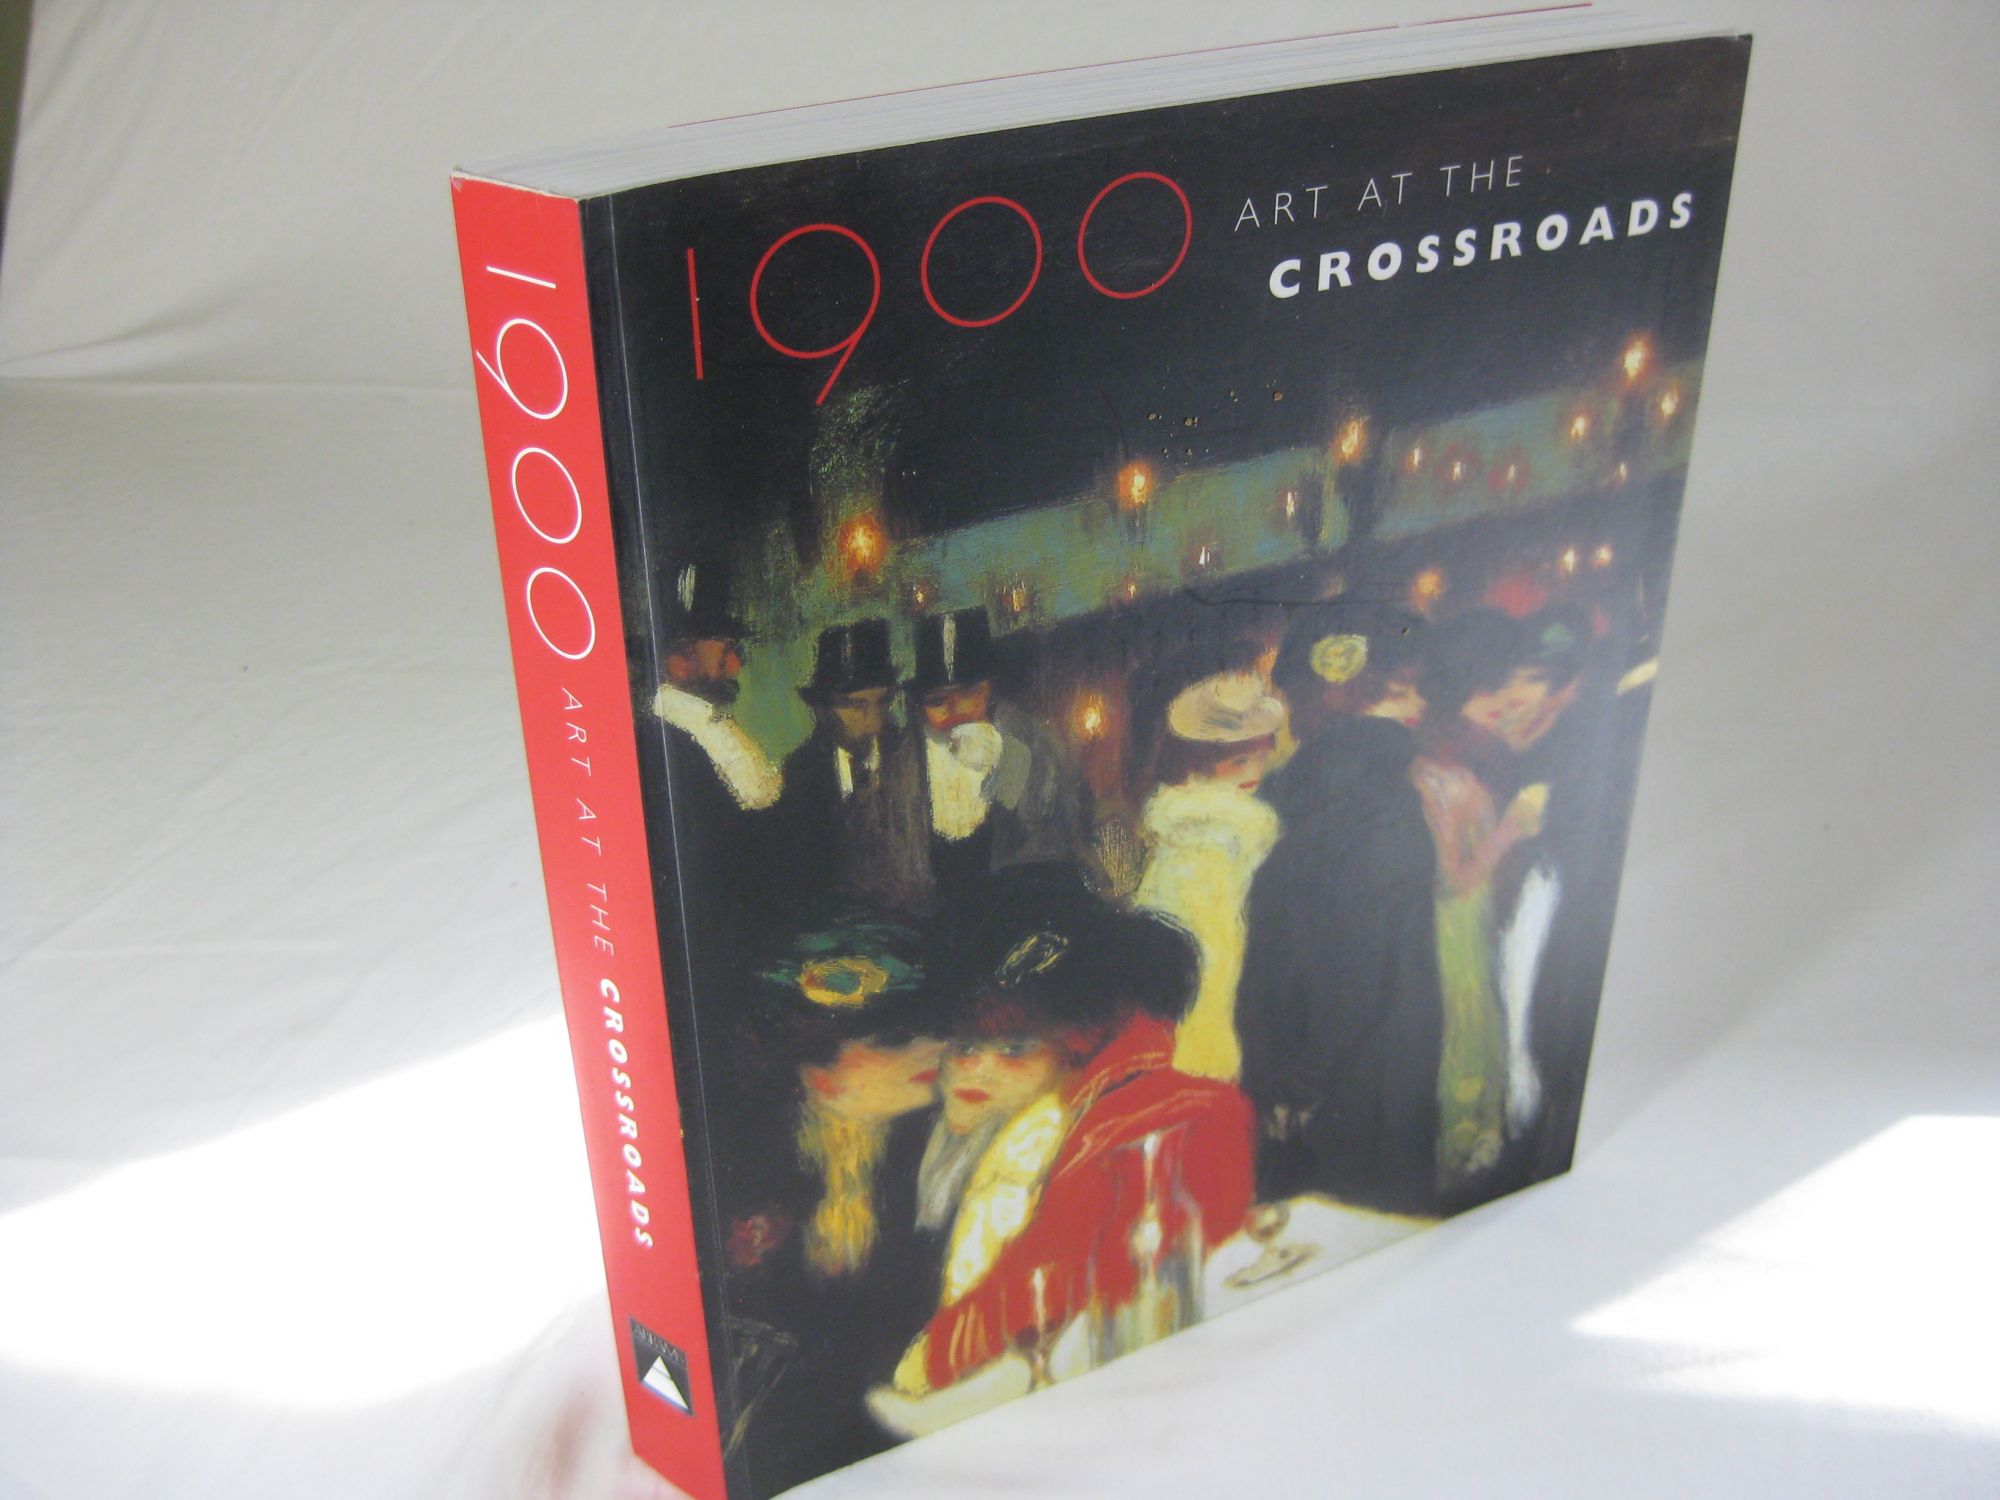 1900 ART AT THE CROSSROADS - Rosenblum, Robert with MaryAnne Stevens and Ann Dumas